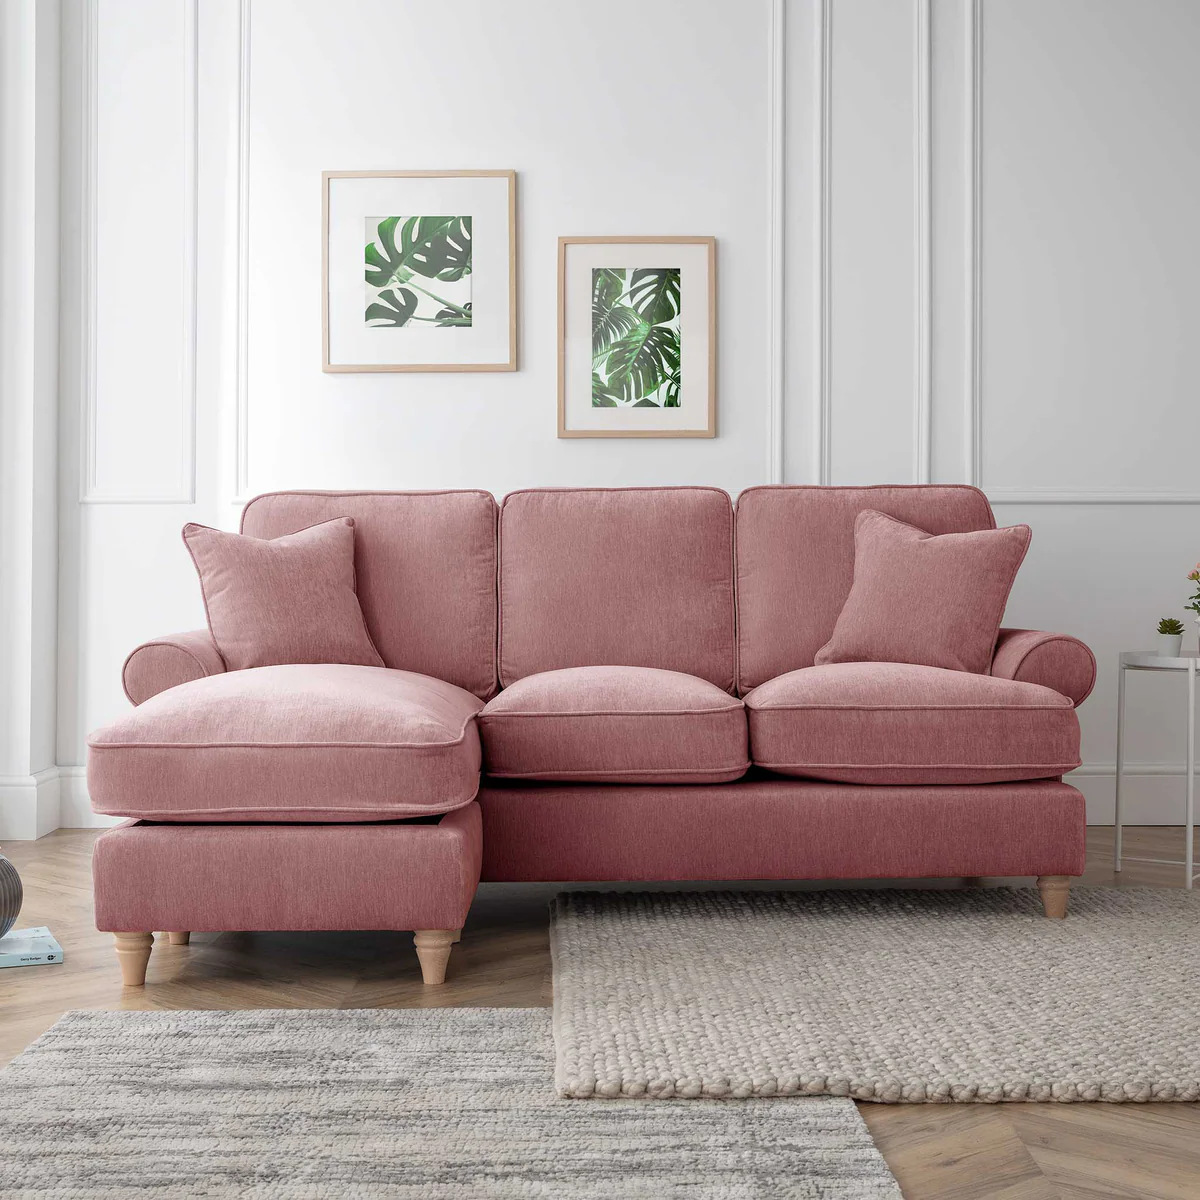 RFM02-05-002-016-alfie-chaise-sofa-LH-plum-roseland-furniture-2